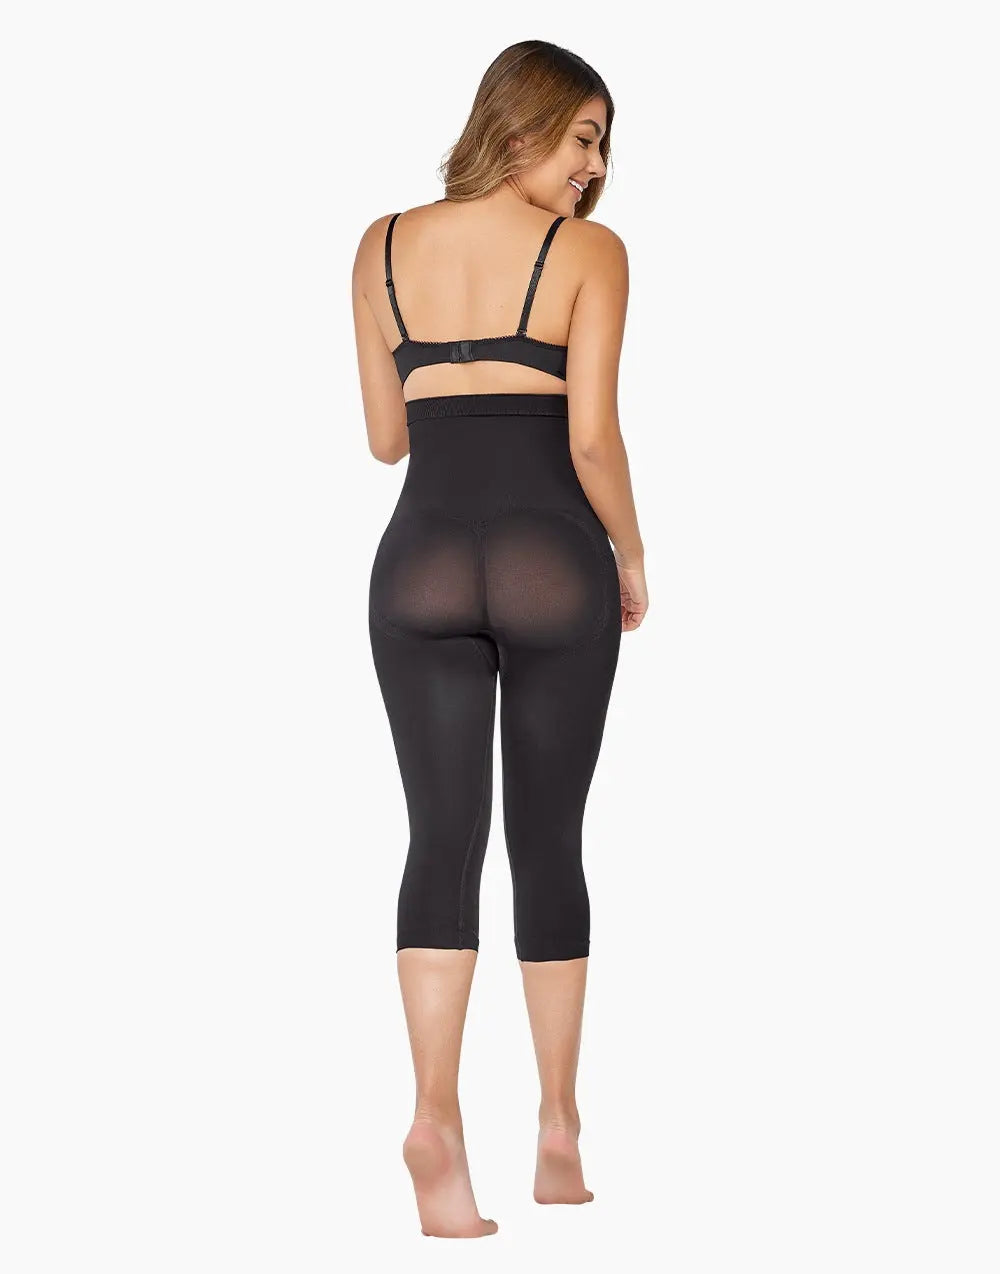 Butt Lifter And Buttock Enhancer For Women Spanx Capri Body Shaper